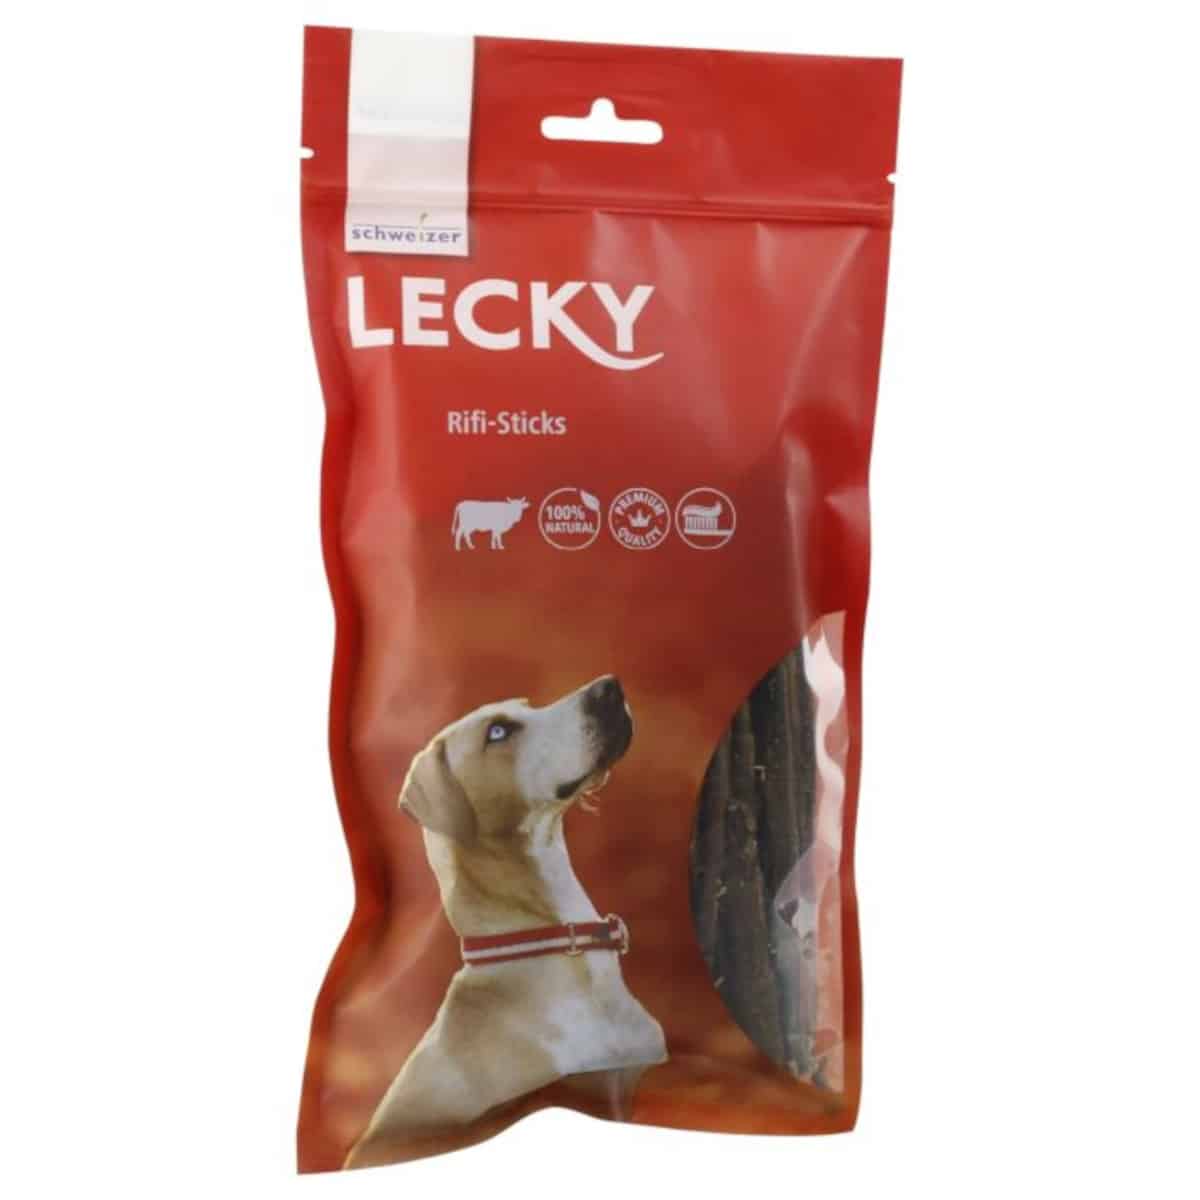 Lecky_Rifi_Sticks in roter Verpackung mit einem Hund abgebildet